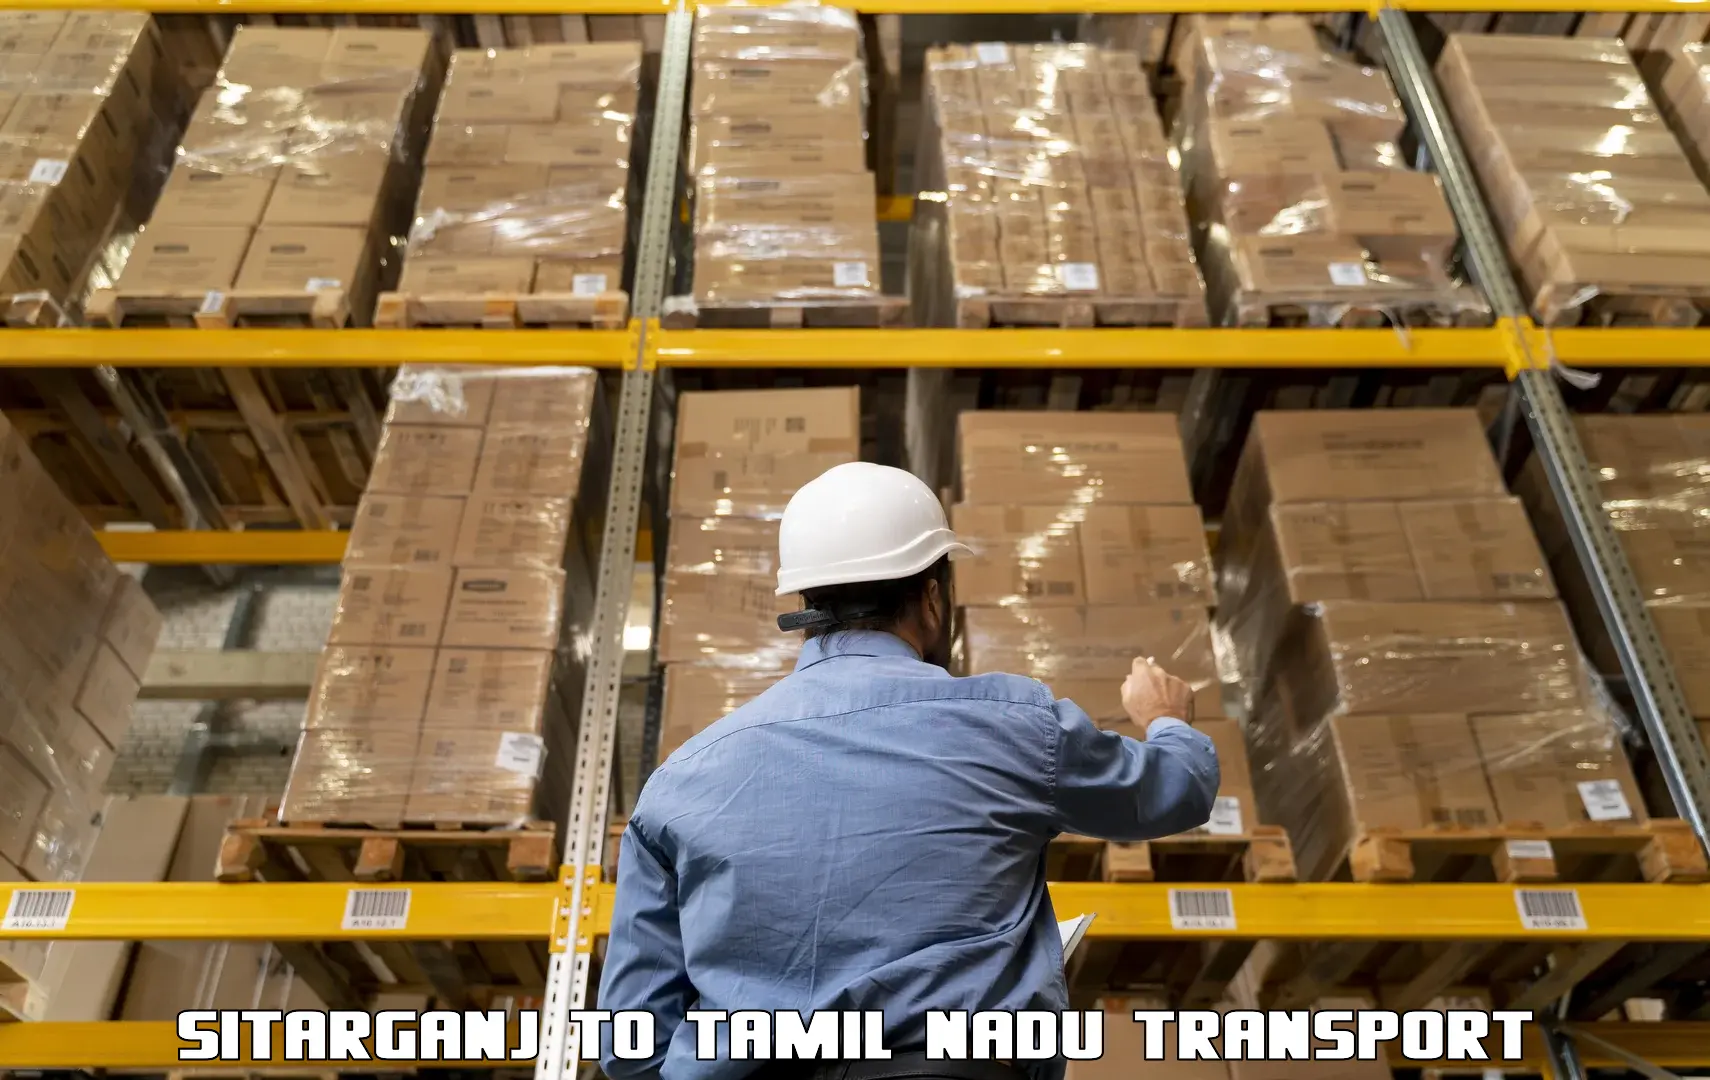 Truck transport companies in India Sitarganj to Tiruturaipundi